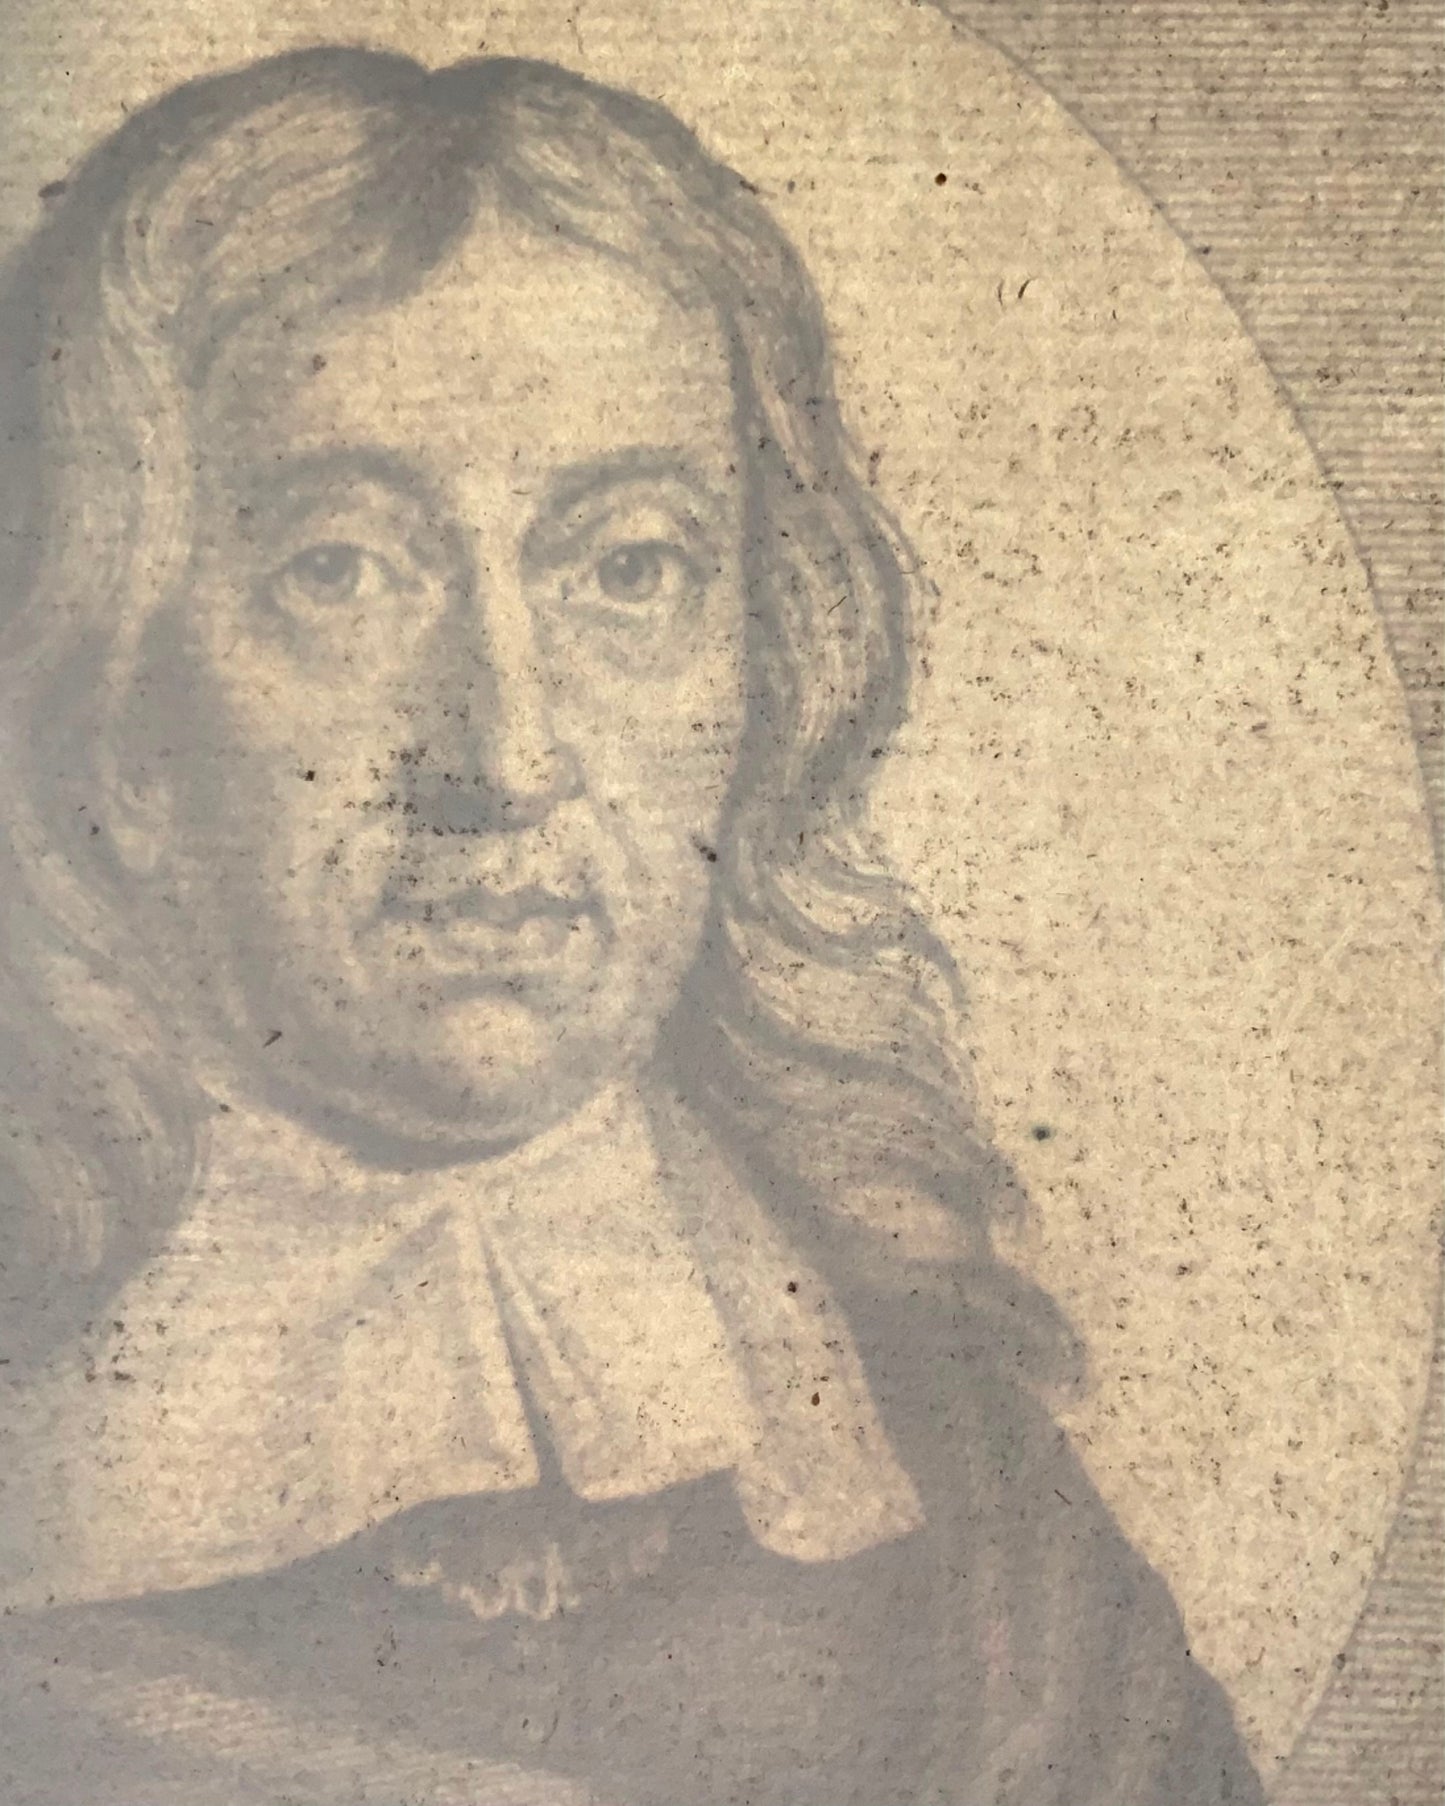 1788 Le poète John Milton [Lèvres d'après Faithorne], Folio, portrait, gravure 